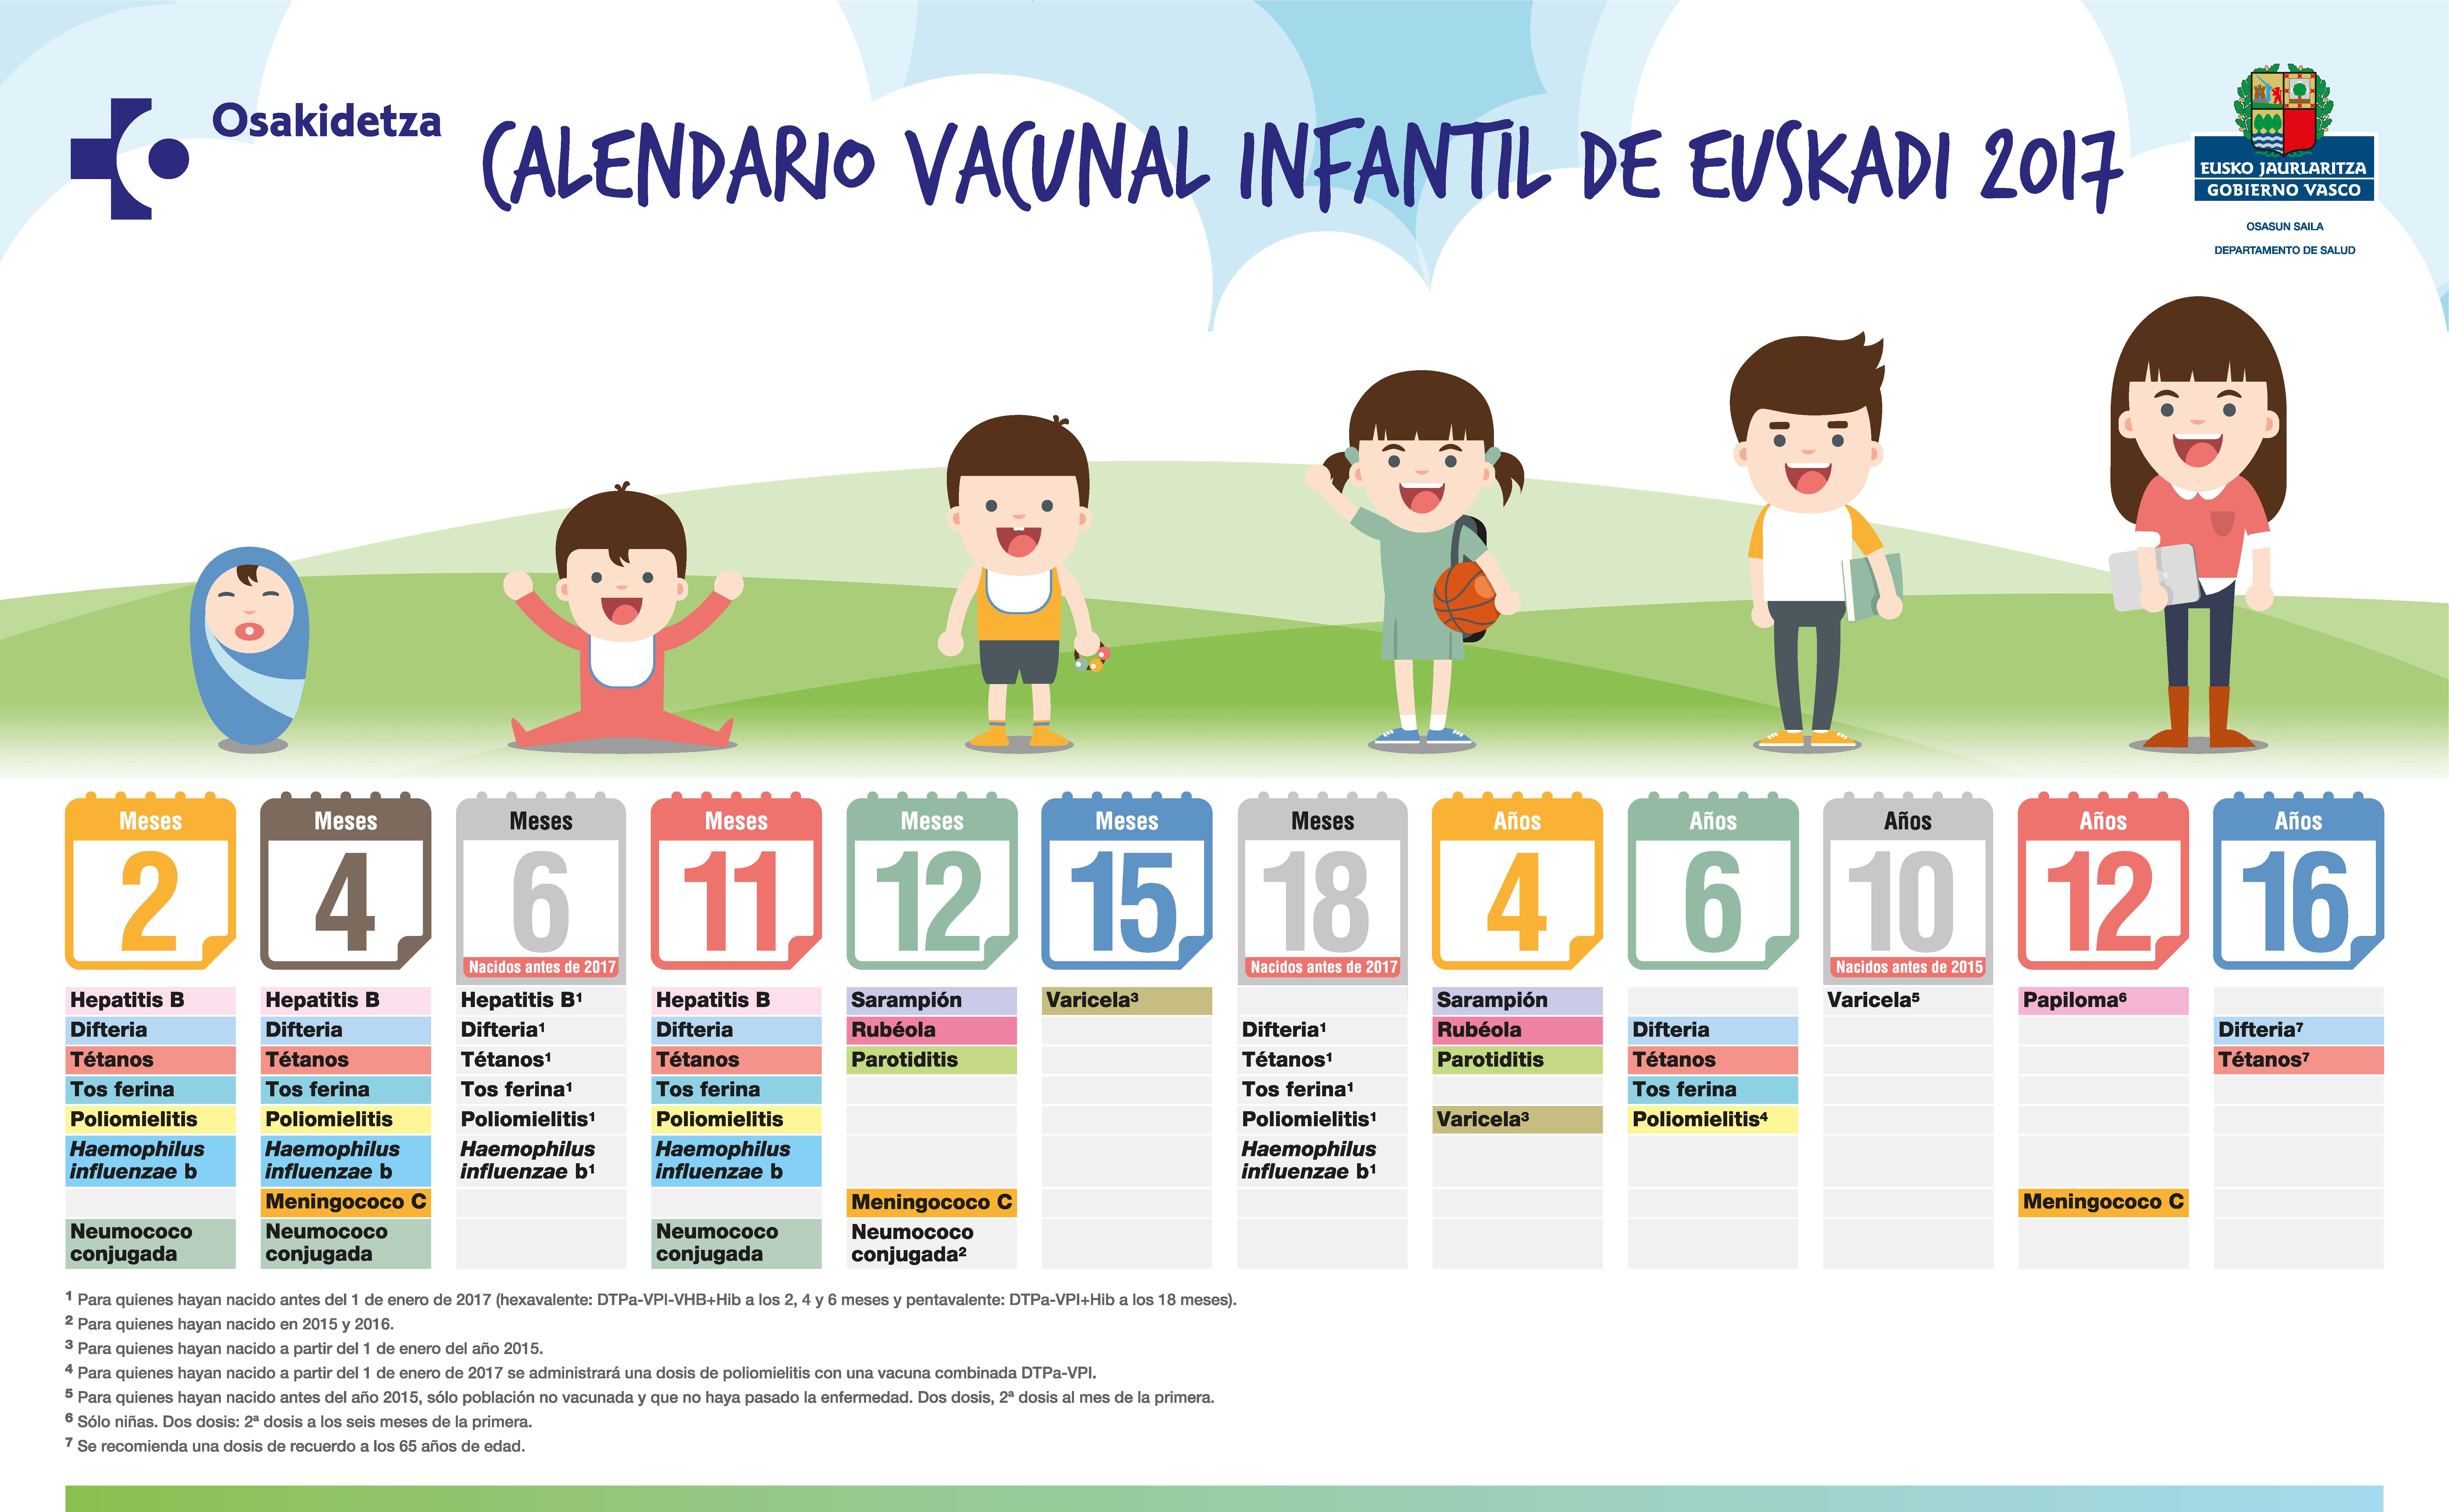 Nuevo servicio de vacunación infantil en el centro IMQ Colón de Bilbao